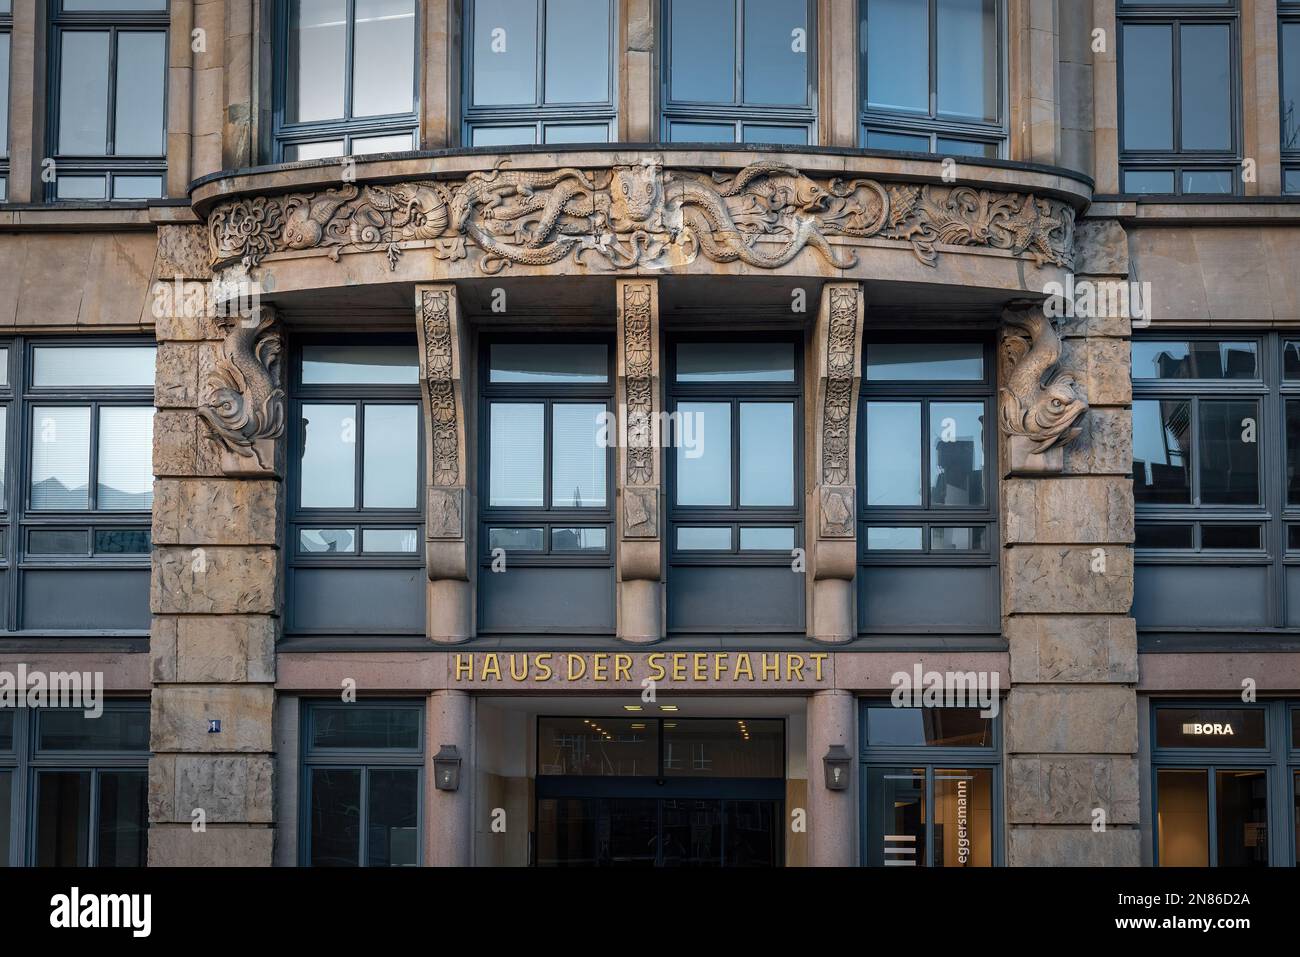 Façade du bâtiment Haus der Seefahrt - Hambourg, Allemagne Banque D'Images